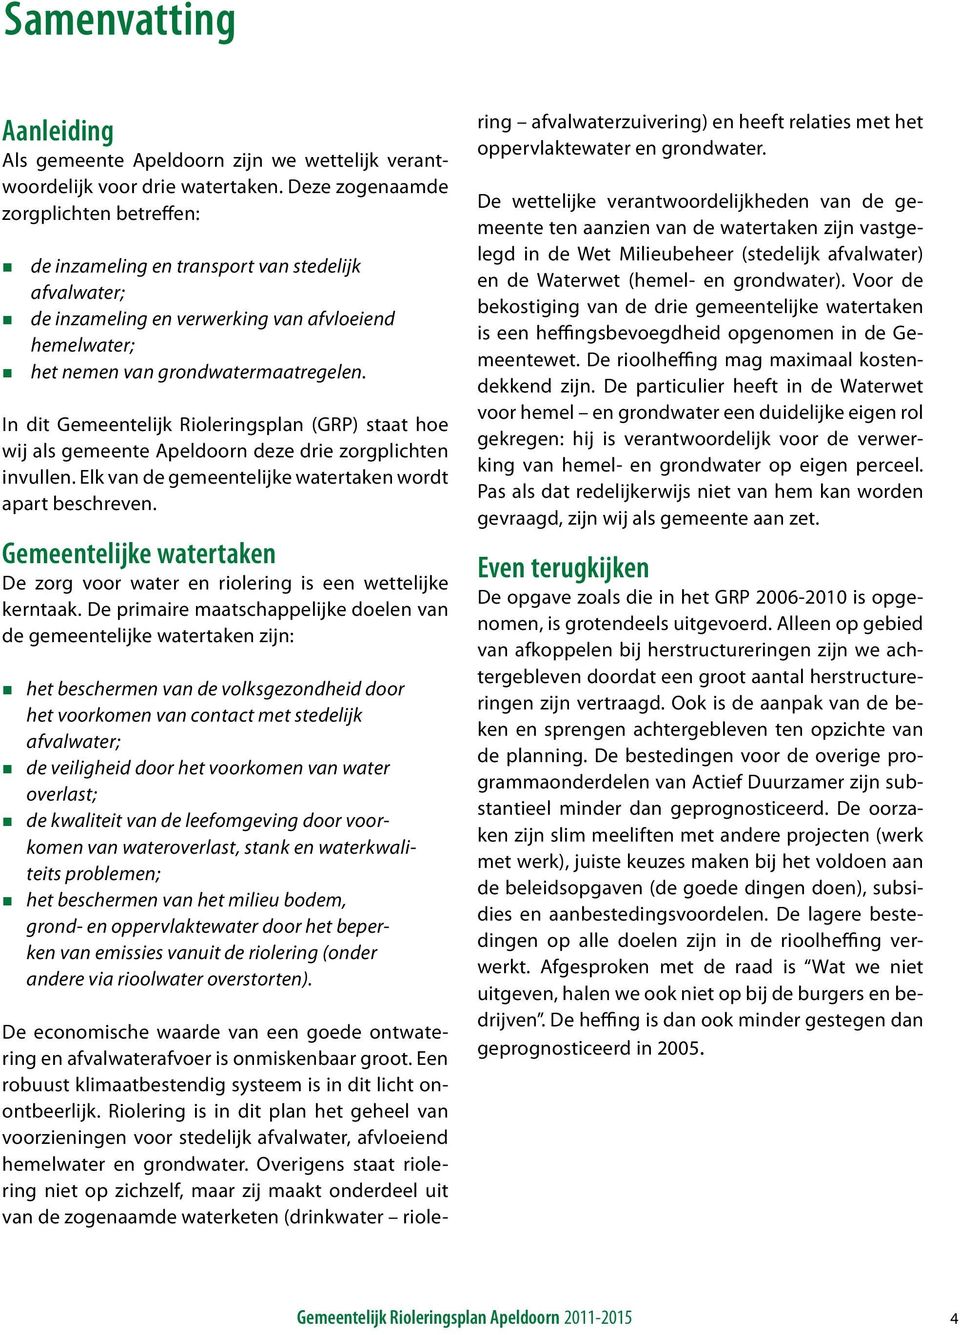 In dit Gemeentelijk Rioleringsplan (GRP) staat hoe wij als gemeente Apeldoorn deze drie zorgplichten invullen. Elk van de gemeentelijke watertaken wordt apart beschreven.